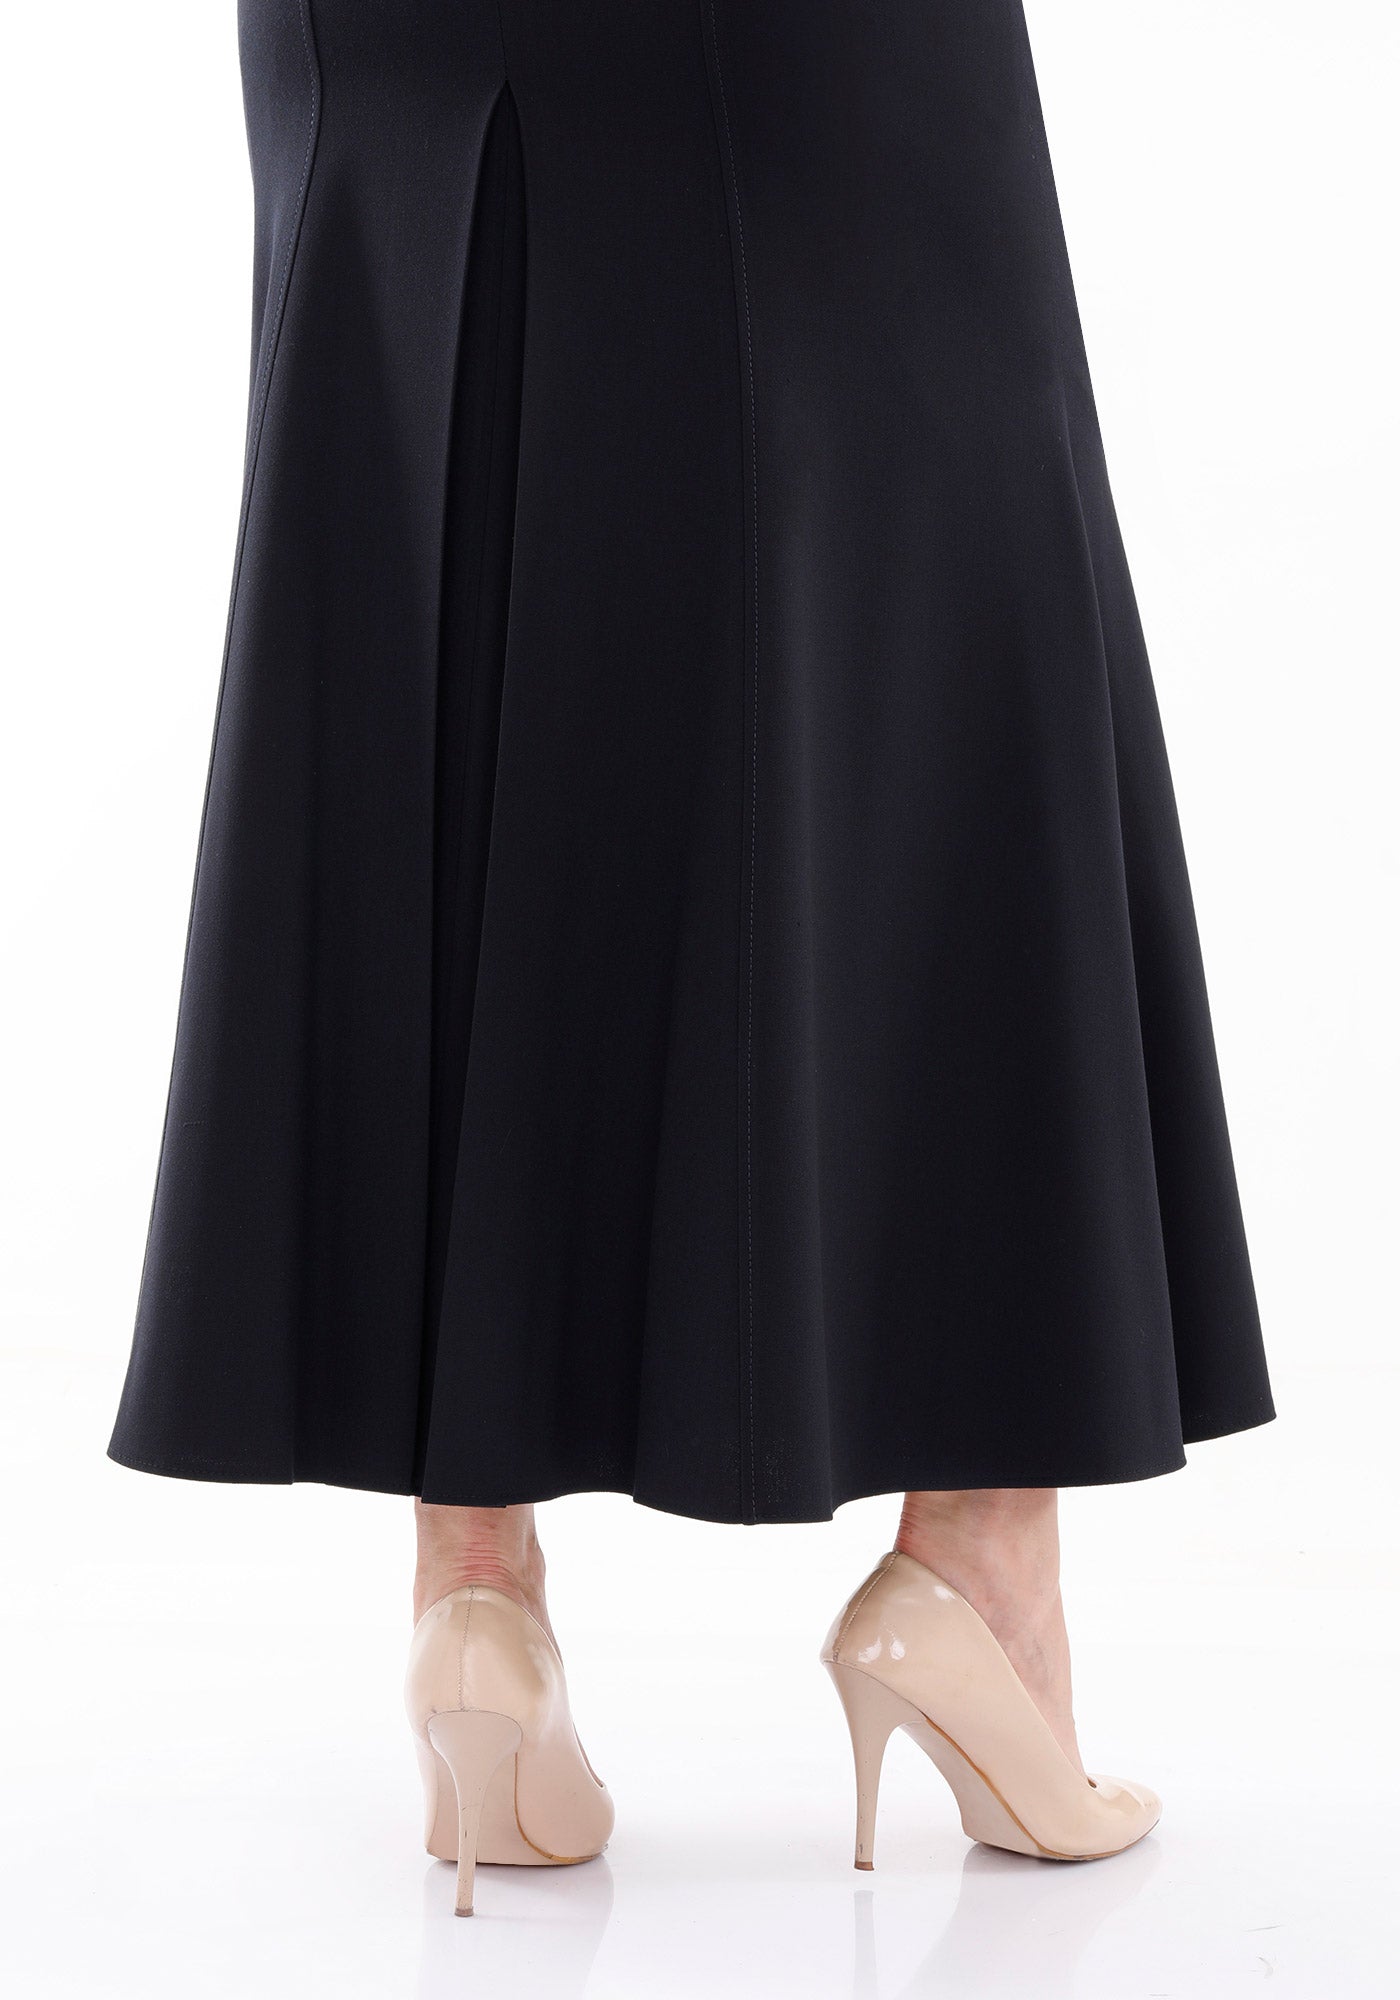 Women's Plus Size Oversized Navy Maxi Fishtail Skirt G-Line